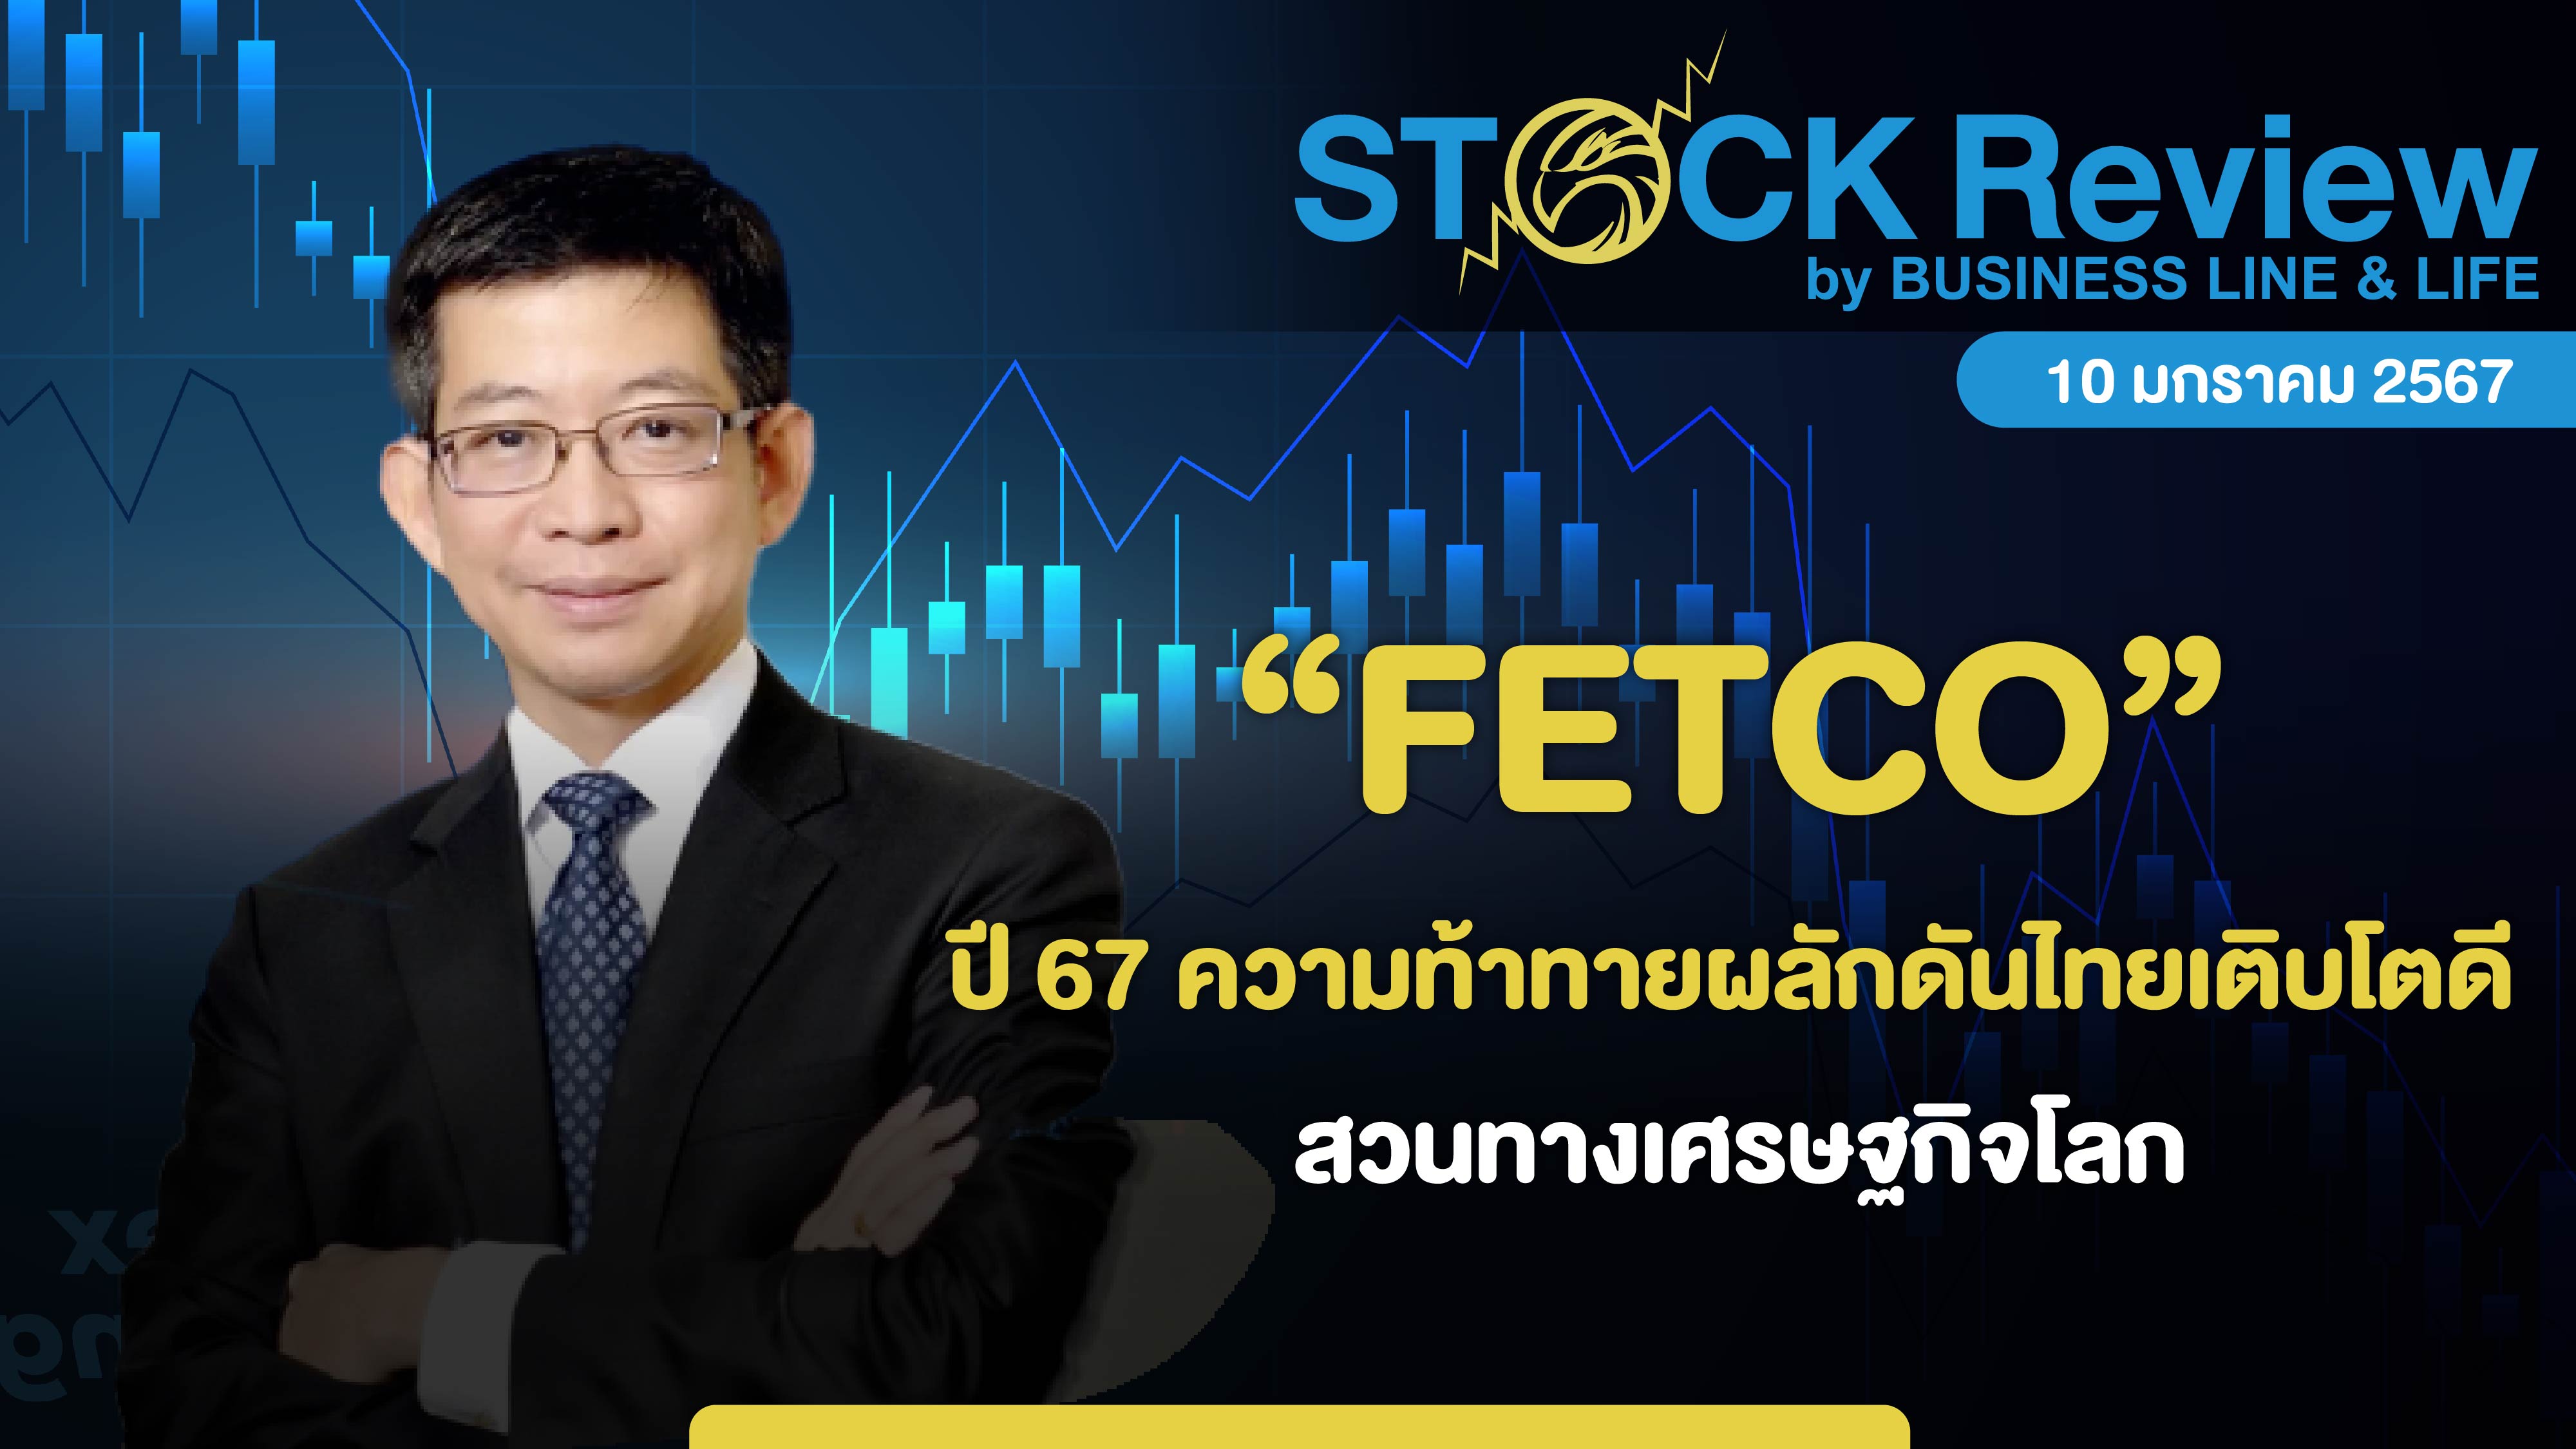 FETCO คาดปี 67 ความท้าทายผลักดันเศรษฐกิจไทยเติบโตดีสวนทางเศรษฐกิจโลก